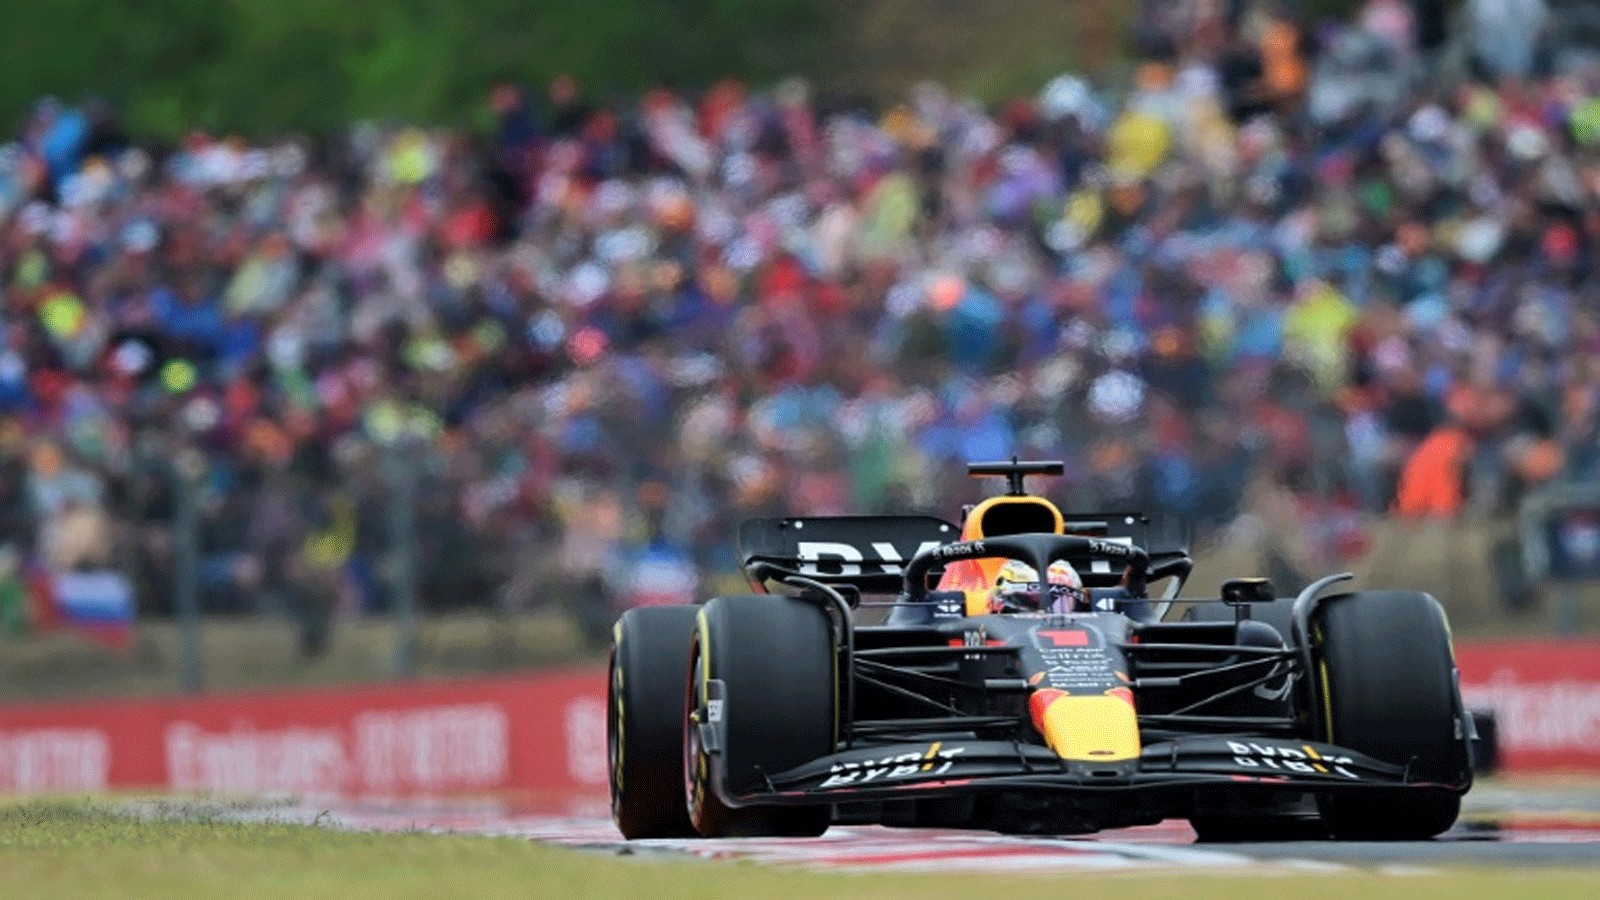 سائق ريد بول الهولندي ماكس فيرستابن يُحيي الجماهير عقب فوزه بسباق جائزة المجر الكبرى في بطولة العالم للفورمولا واحد في 31 تموز/يوليو 2022.